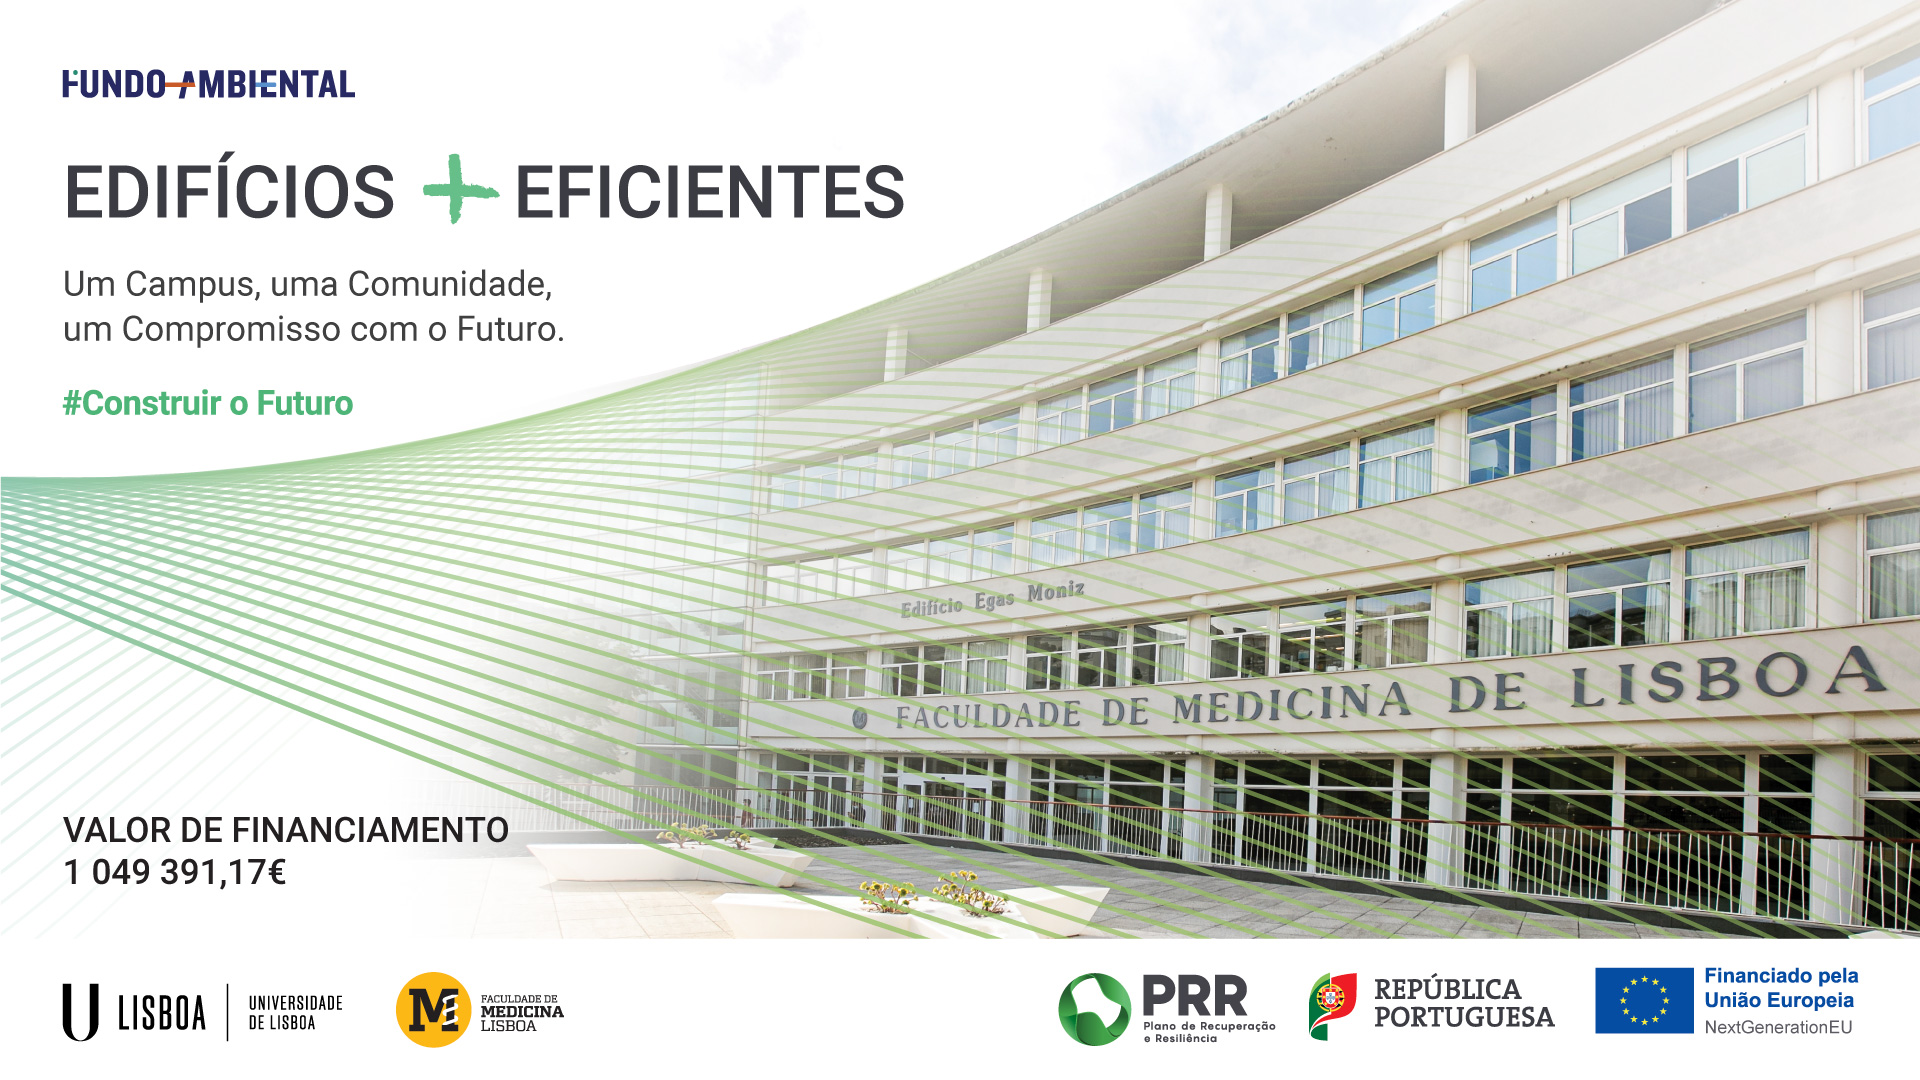 PRR fundo ambiental projeto Operação Egas Moniz| Eficiência energética e Sustentabilidade